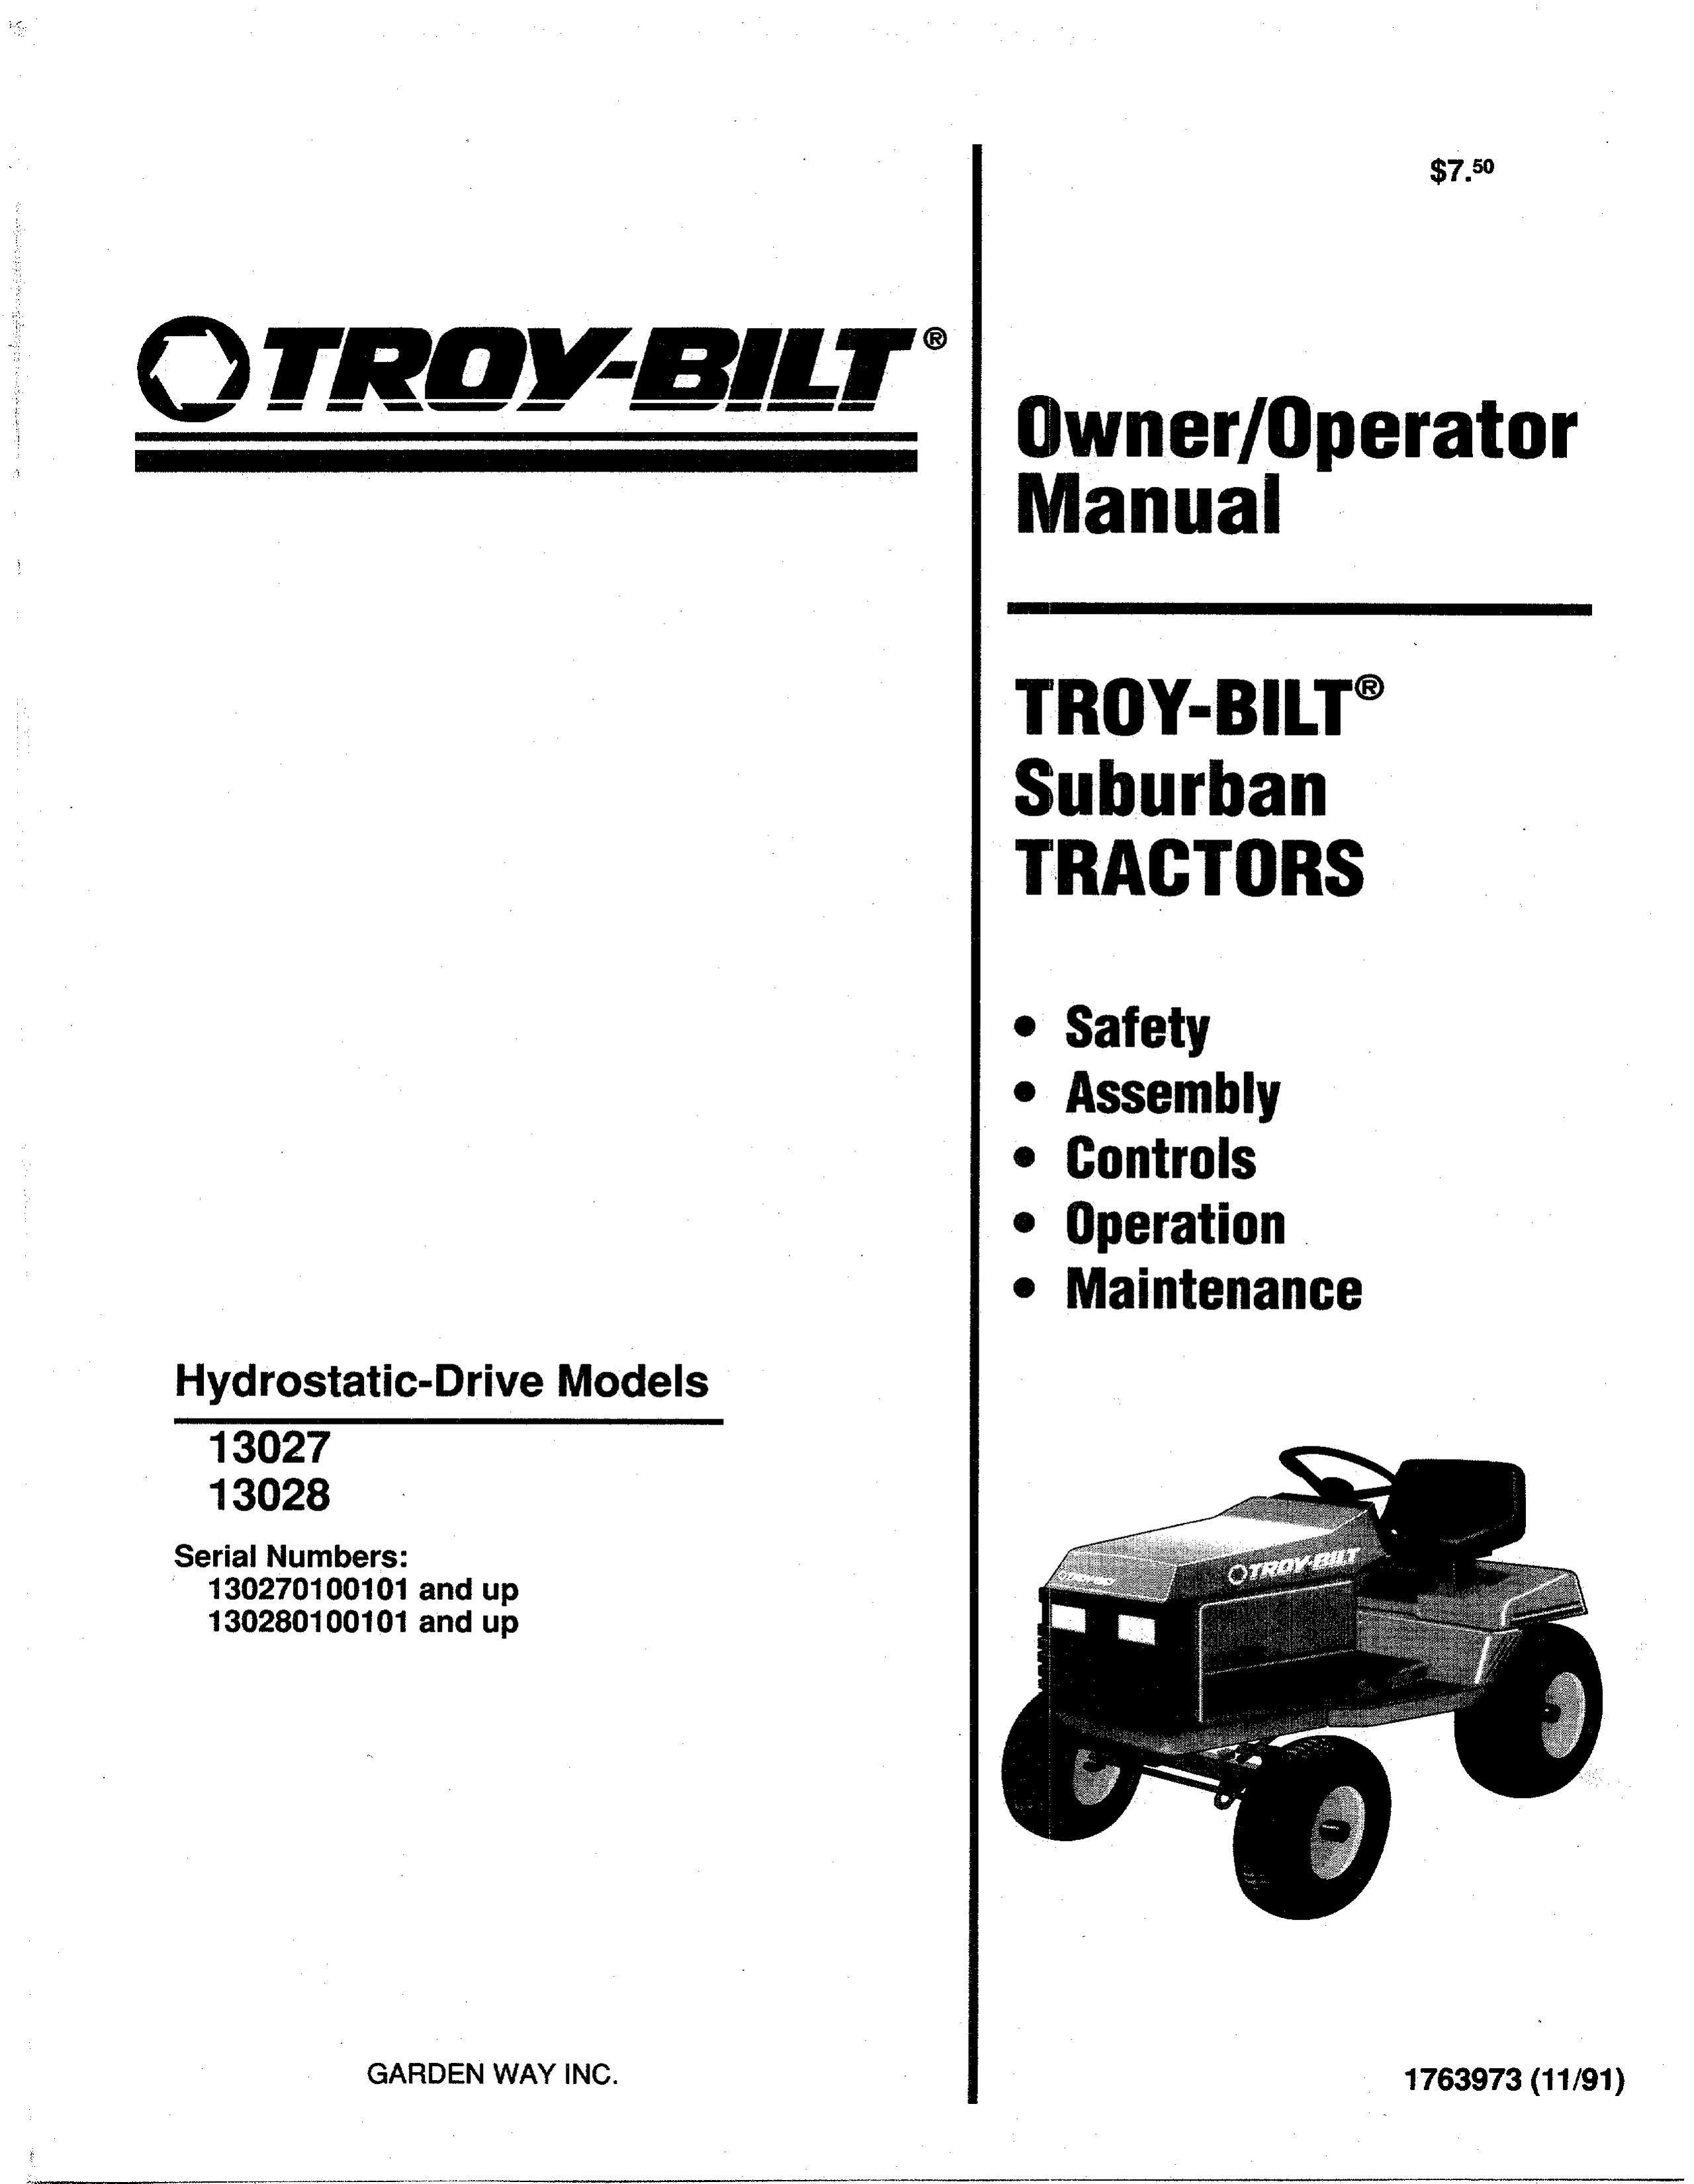 Troy-Bilt 13028 Lawn Mower User Manual